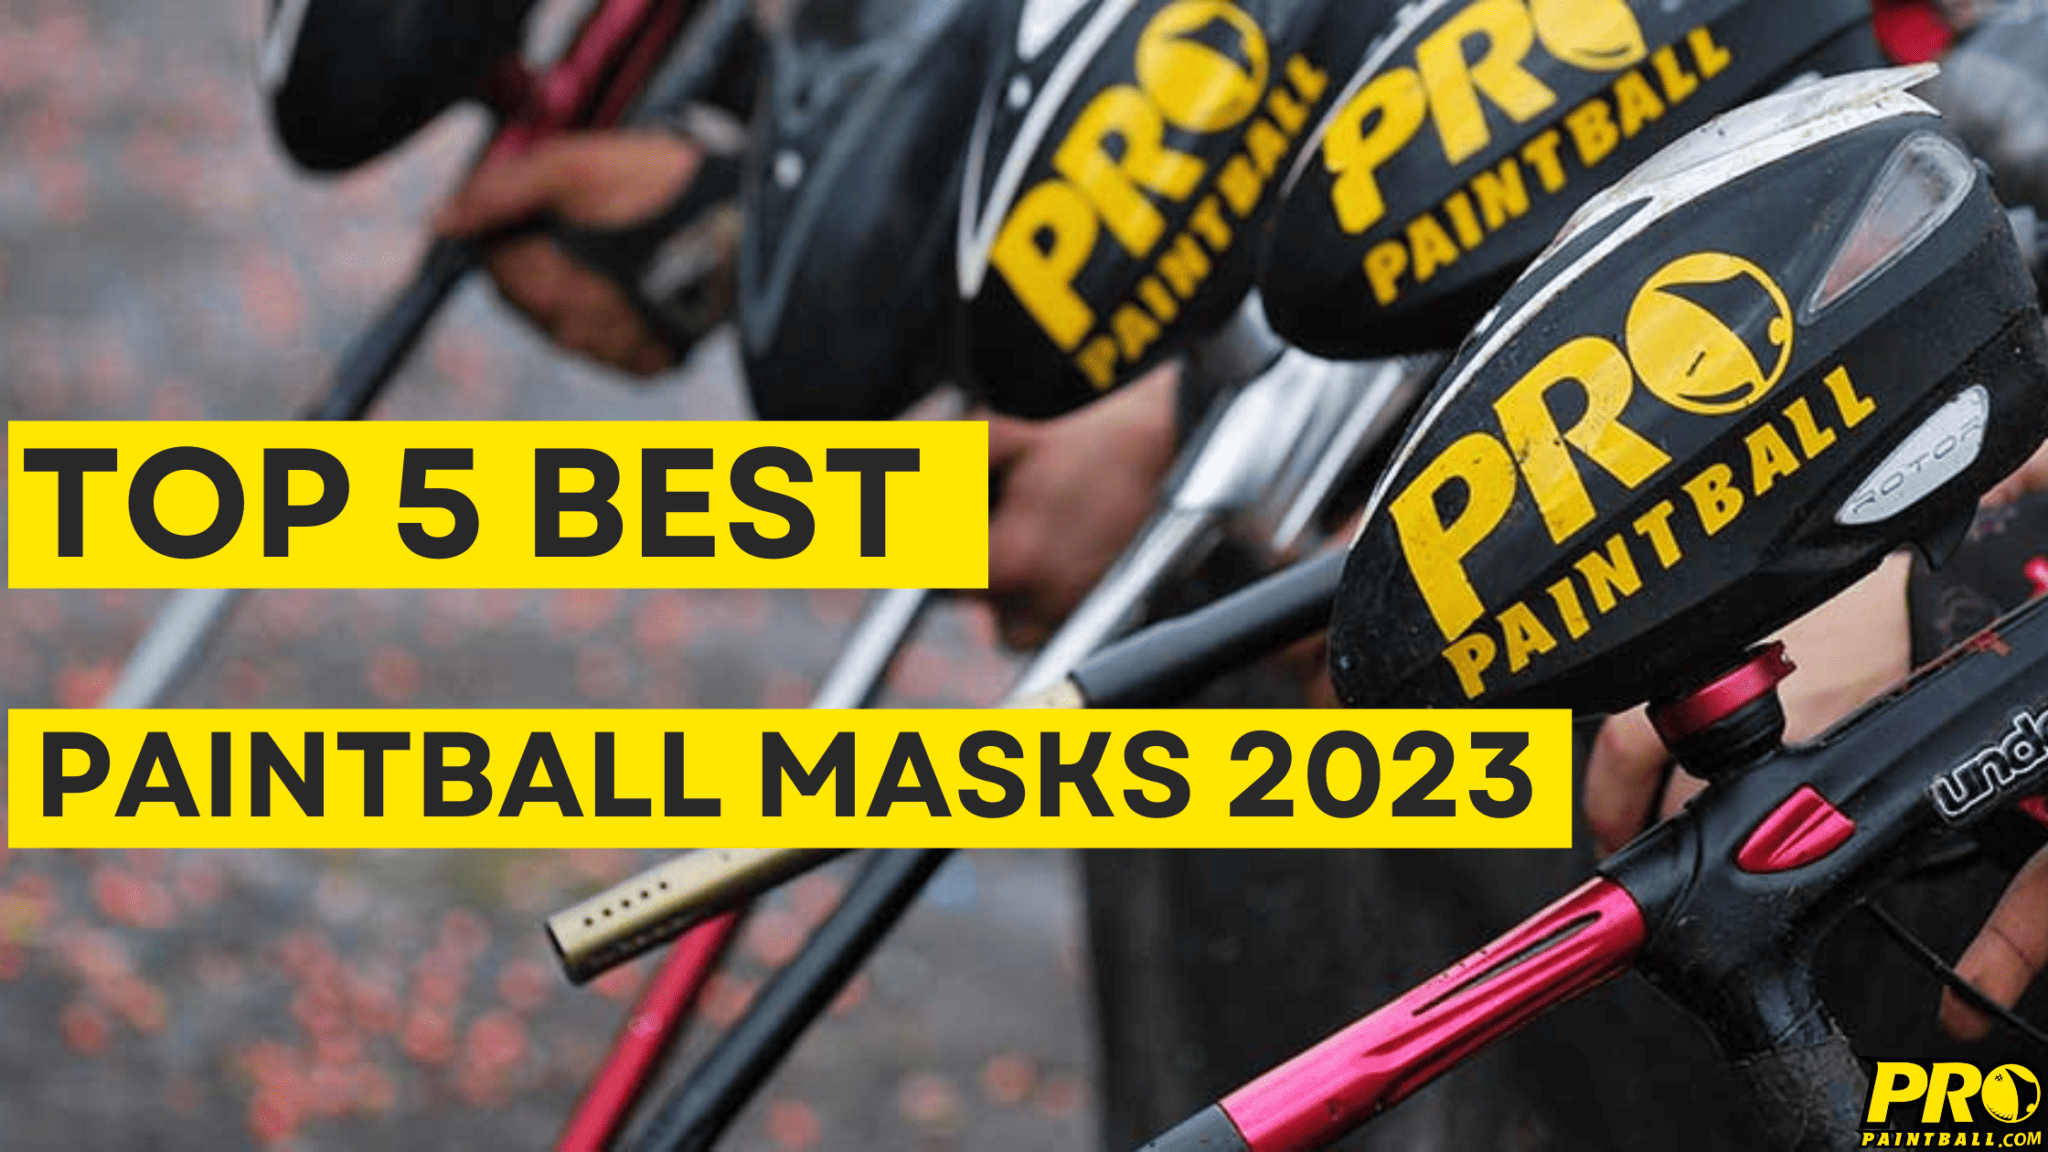 Top 5 best paintball masks 2023